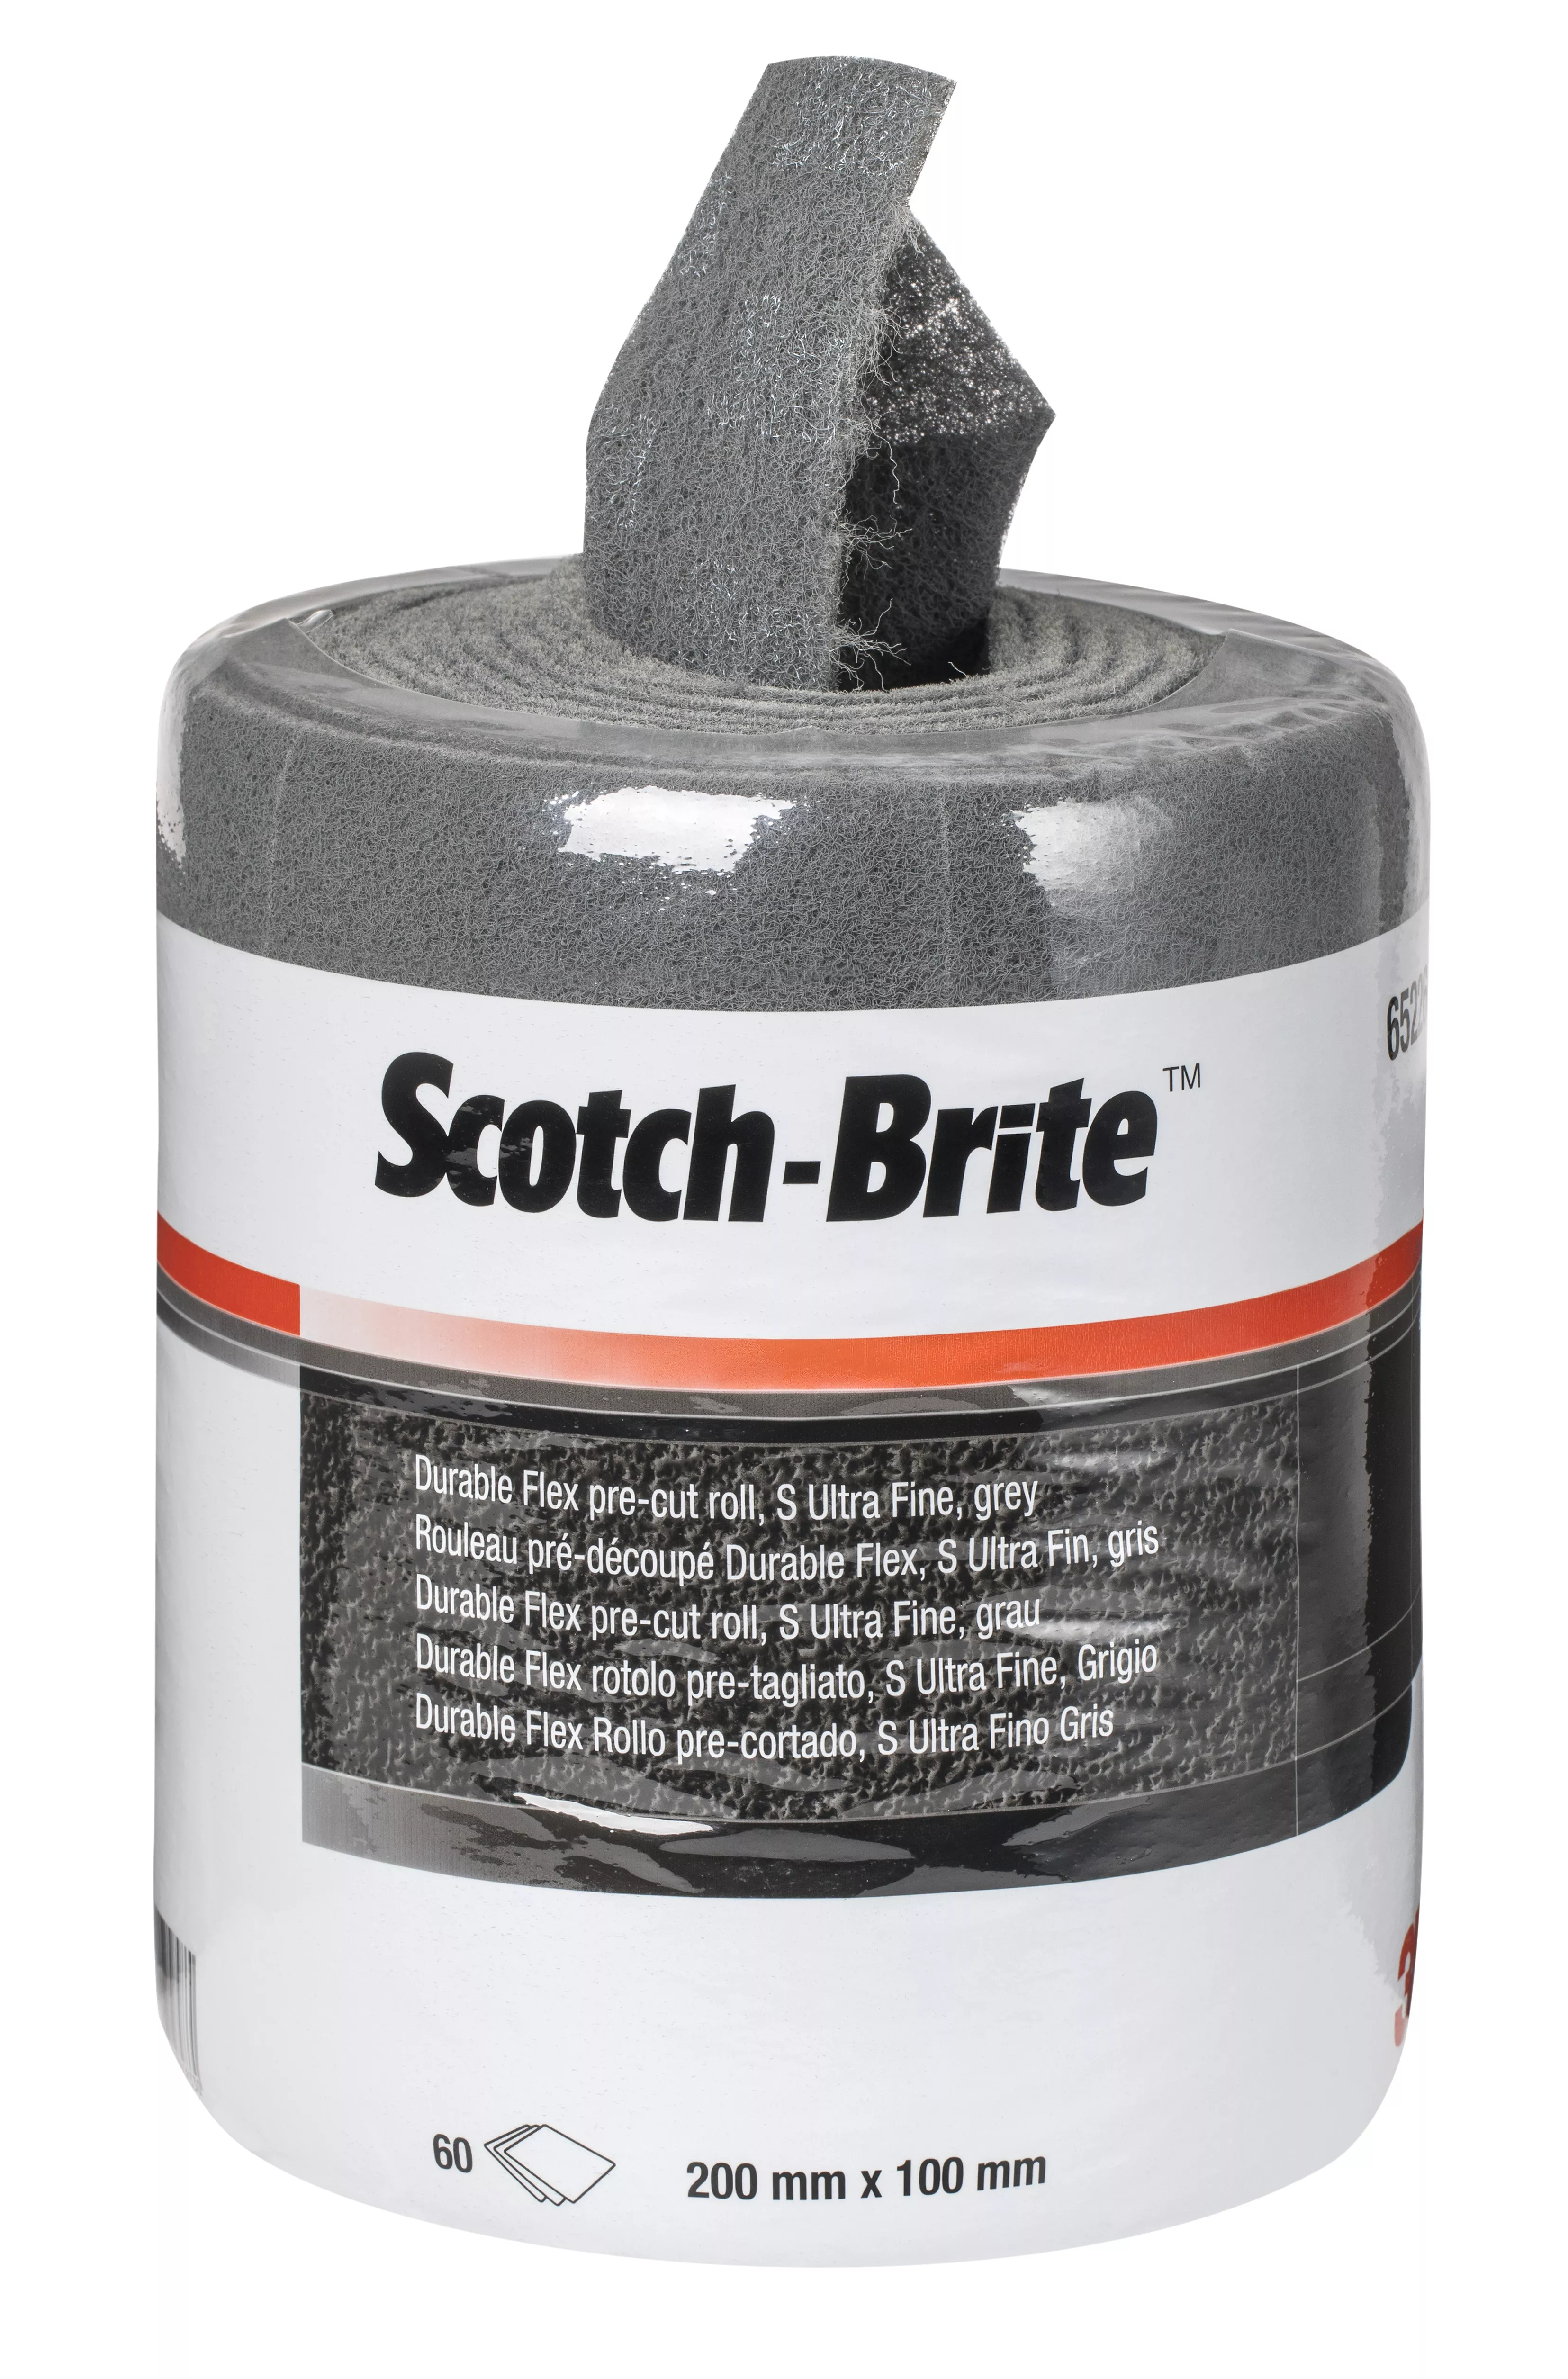 SKU 7000046268 | Scotch-Brite™ Durable Flex Roll